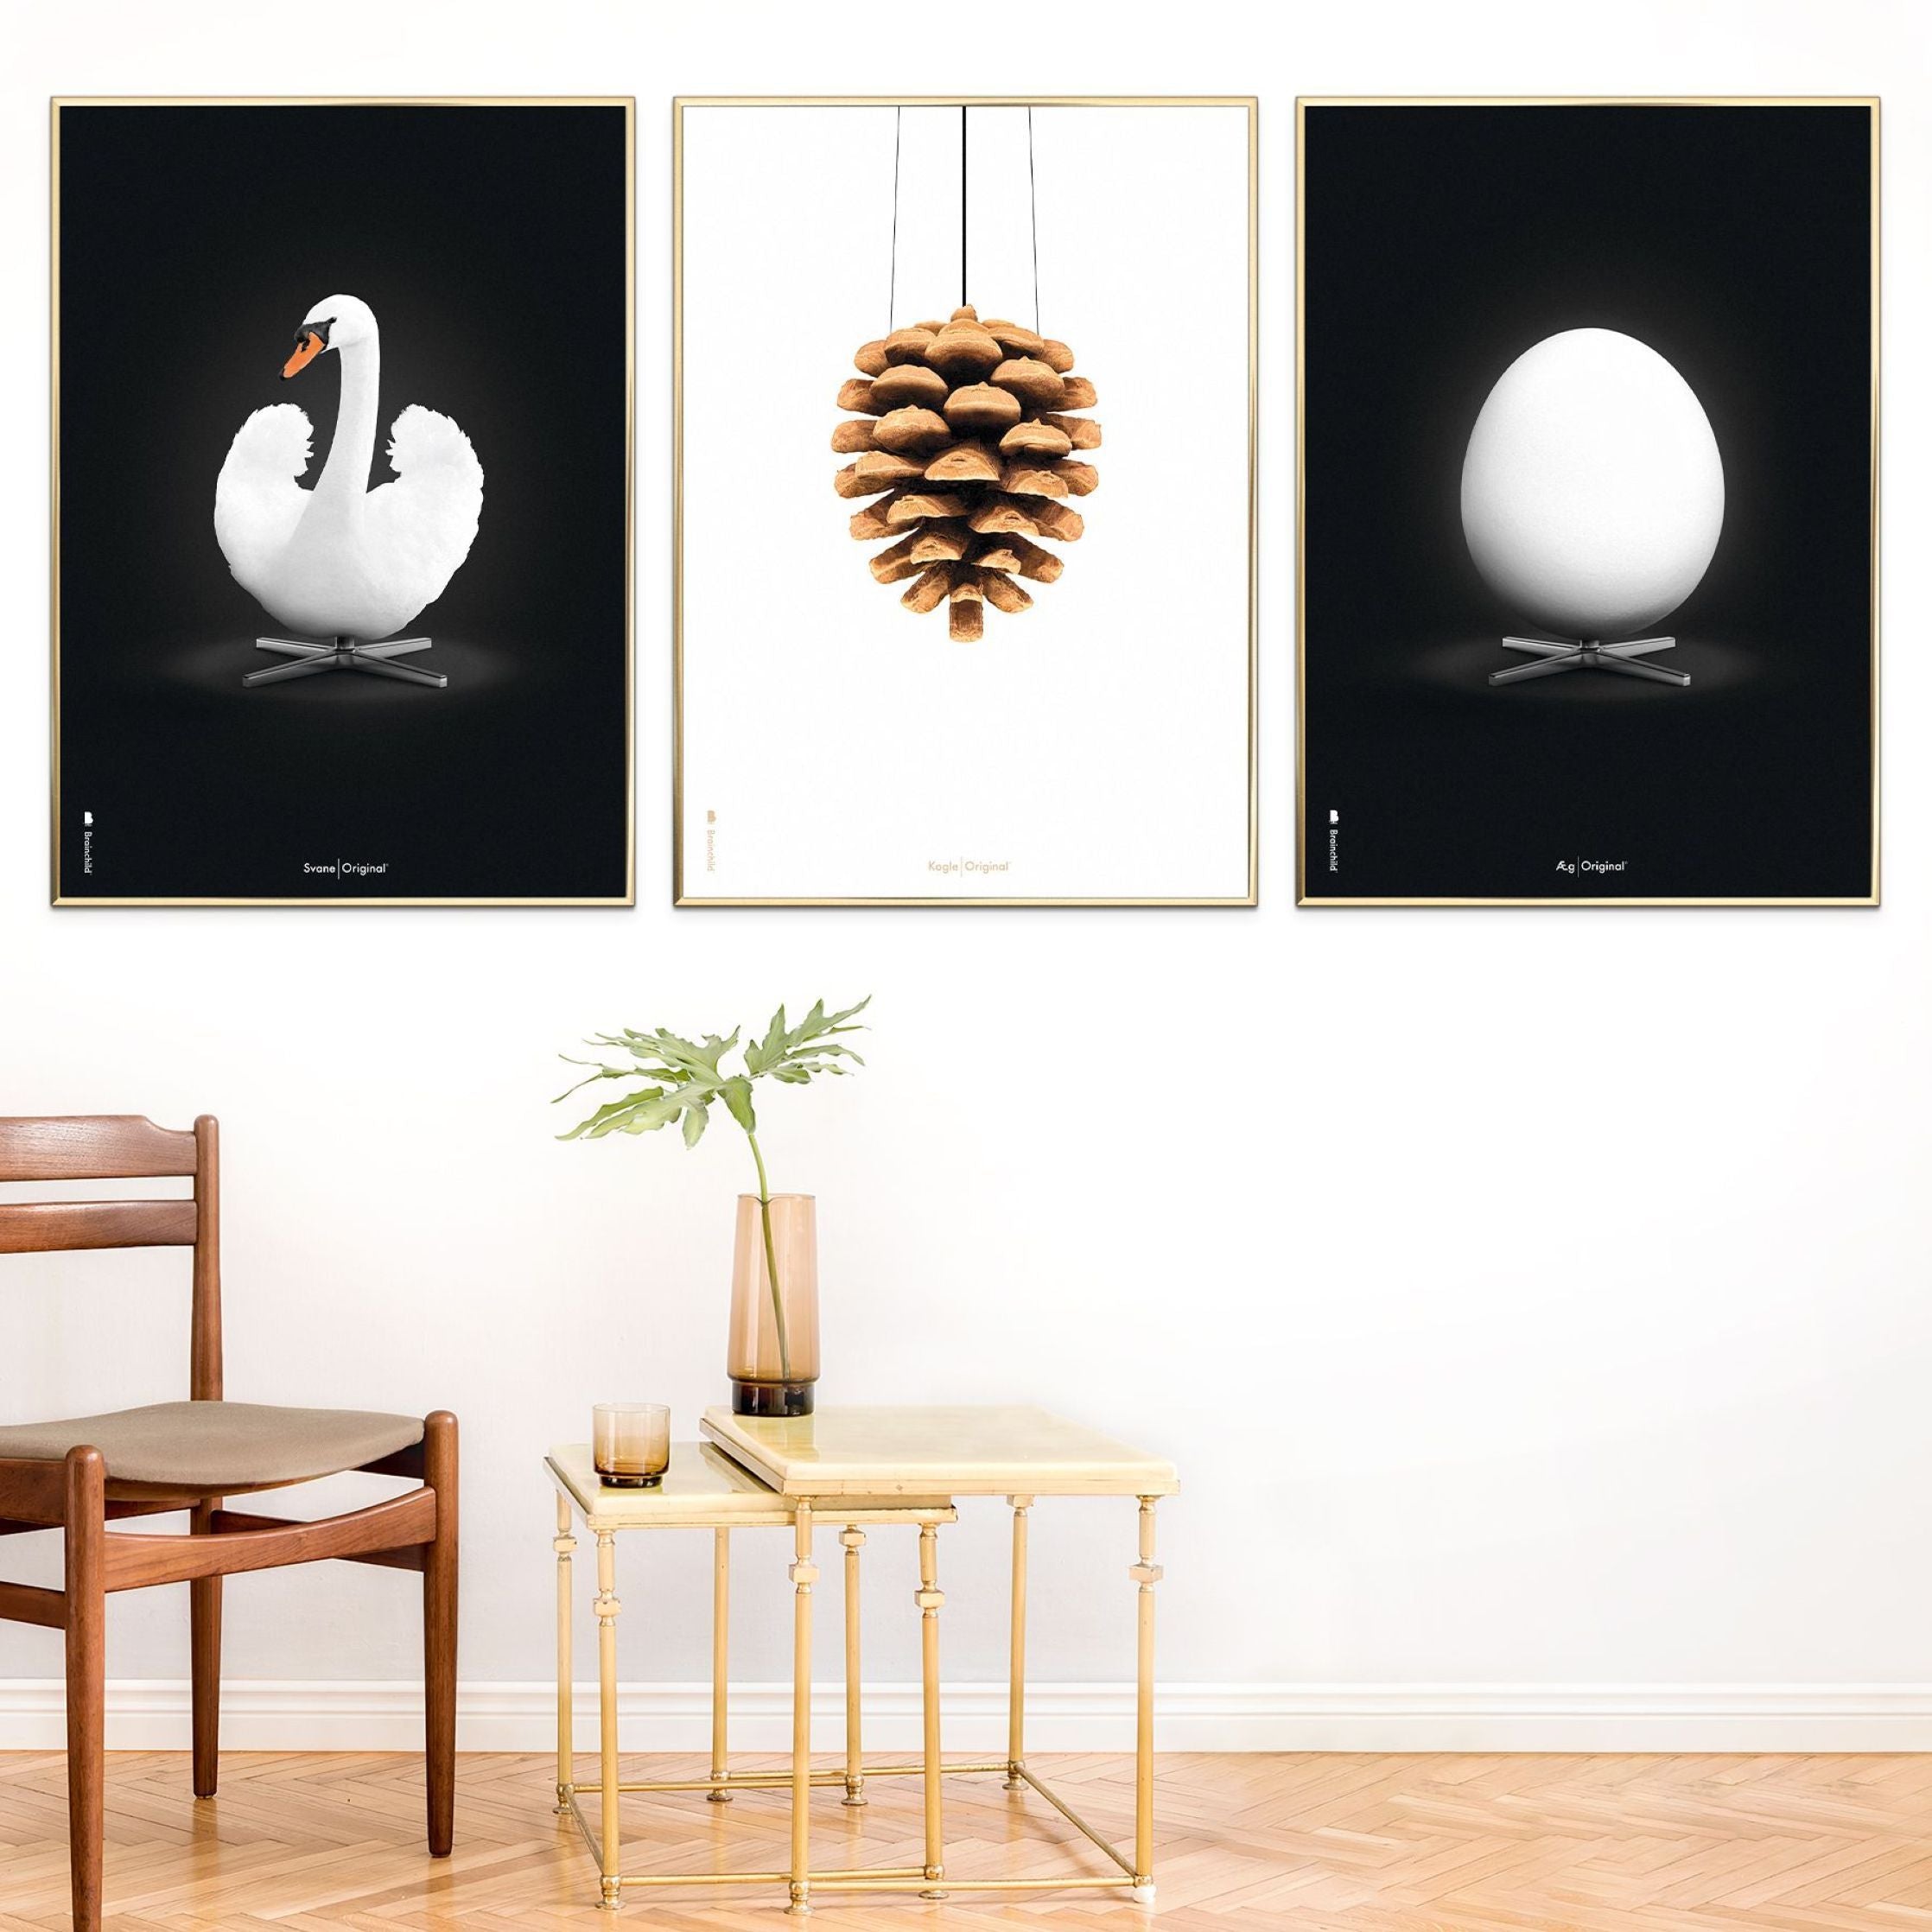 Brainchild Swan Classic Affisch No Frame 30x40 cm, vit/svart bakgrund